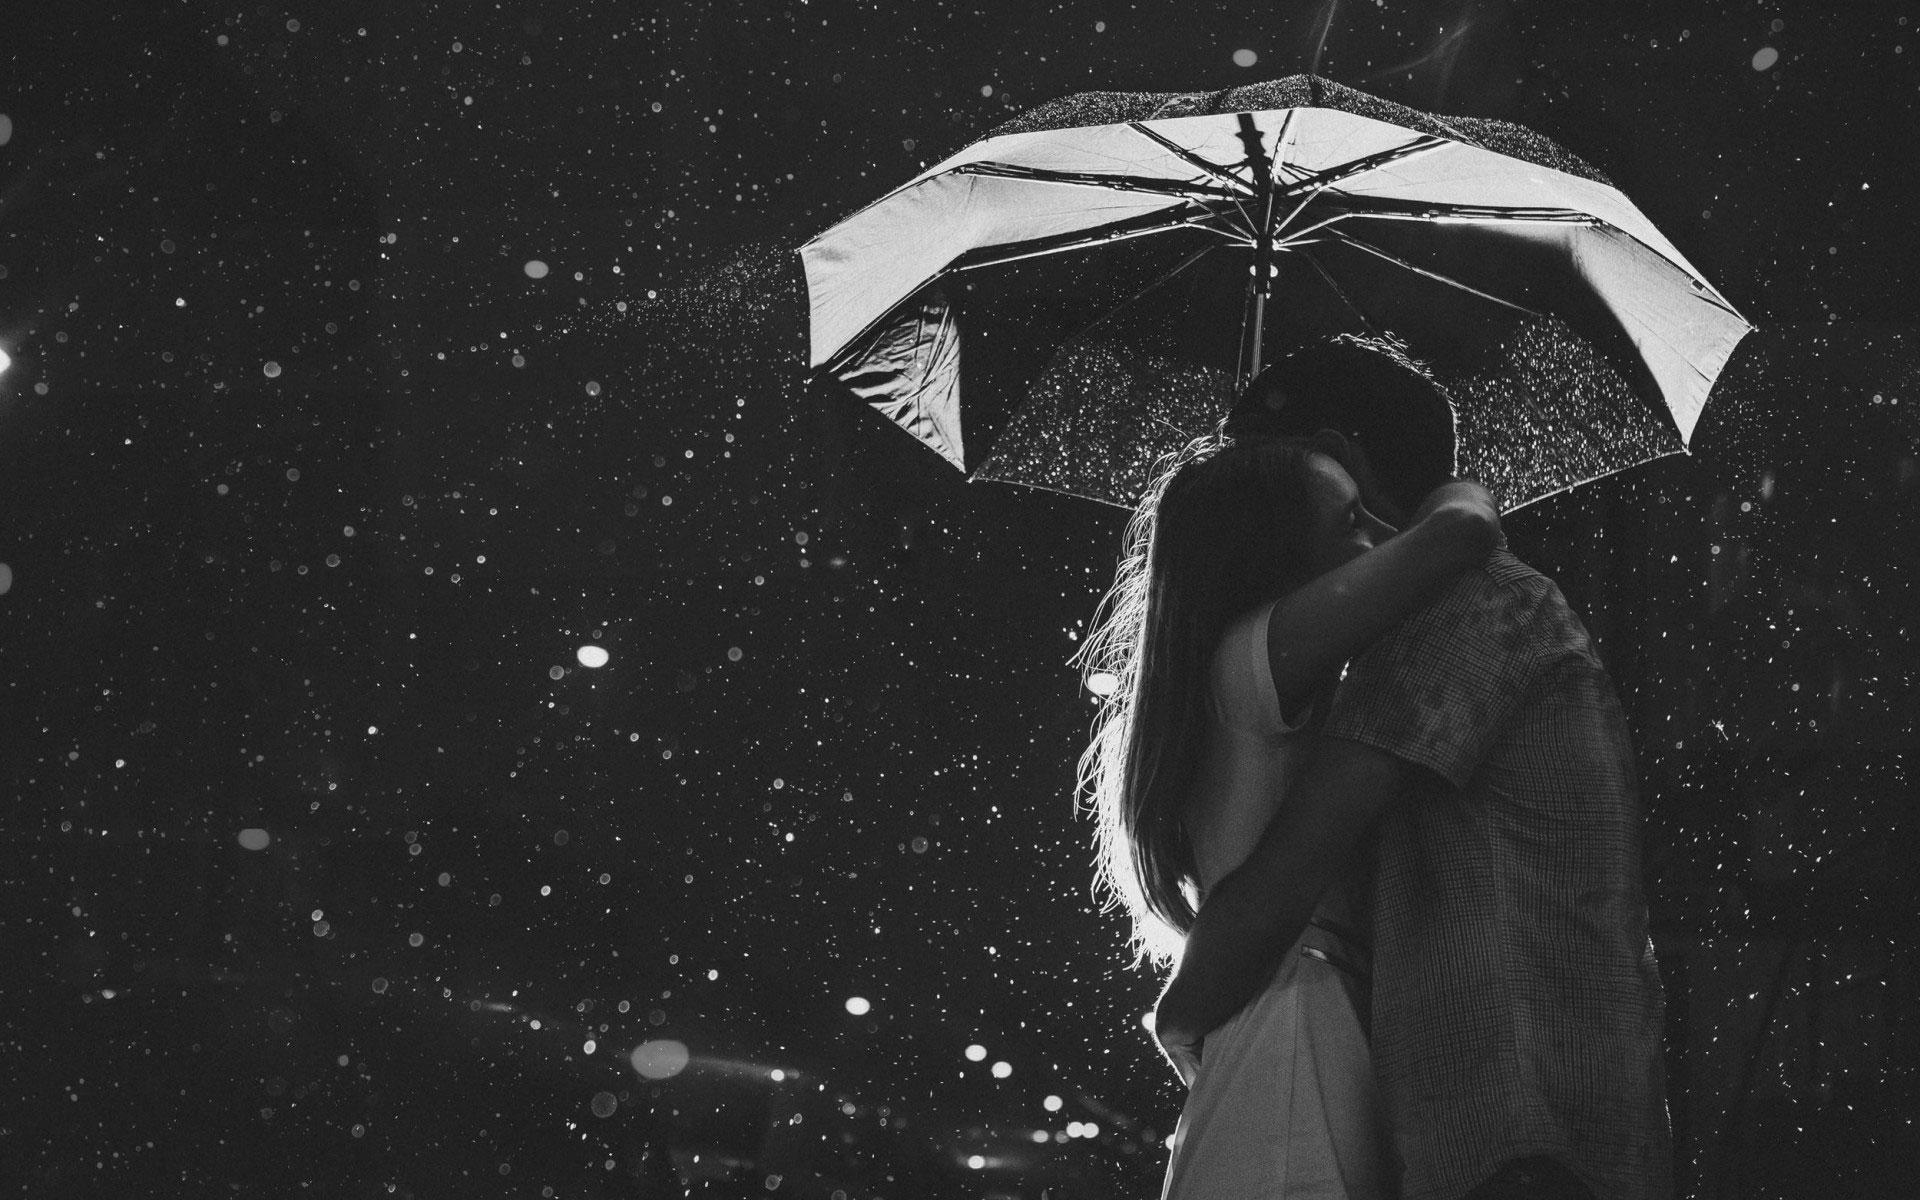 Love Couple's Romance in the Rain Wallpaper